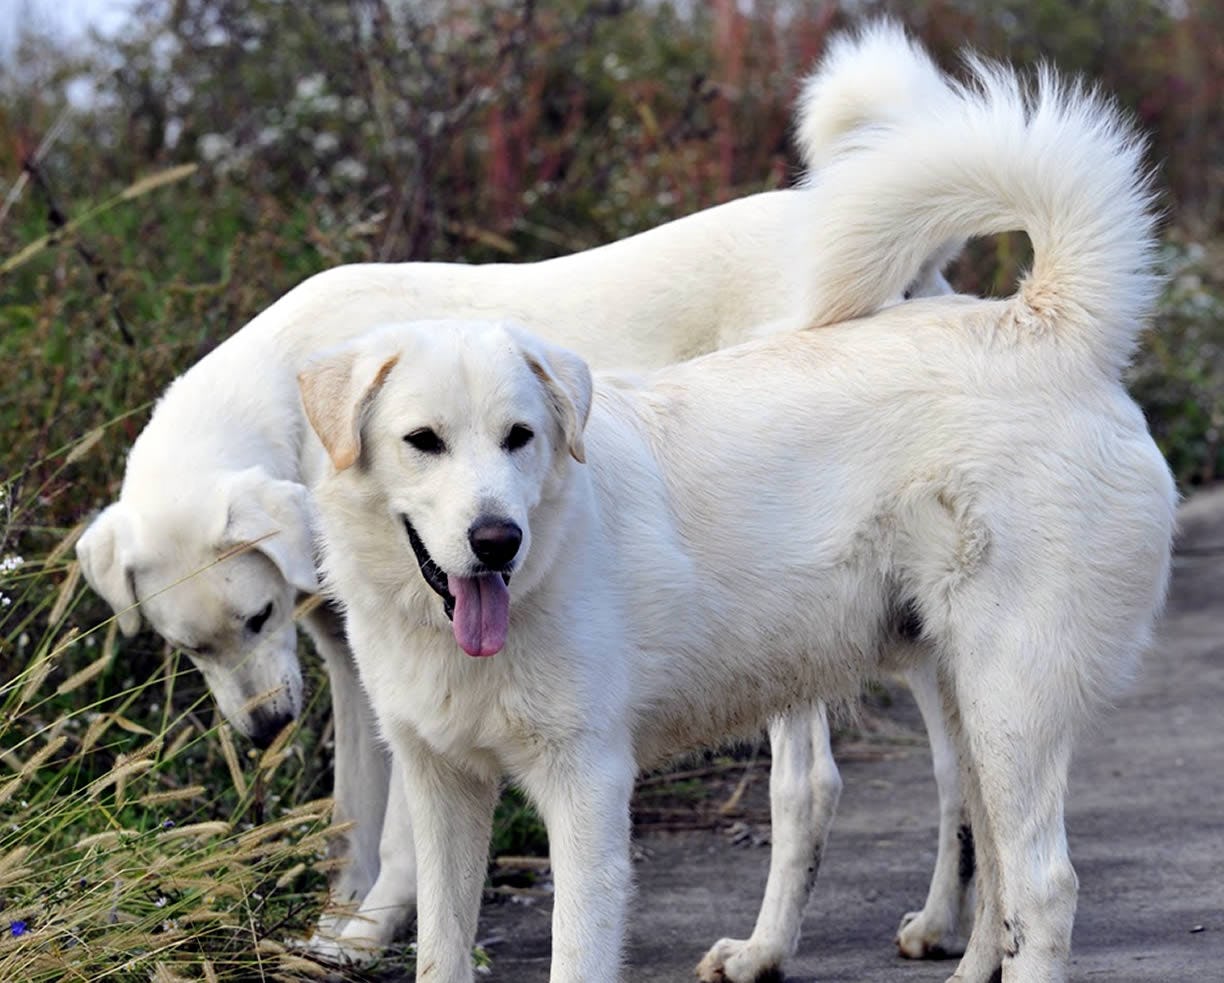 Secondary image of Akbash Dog dog breed